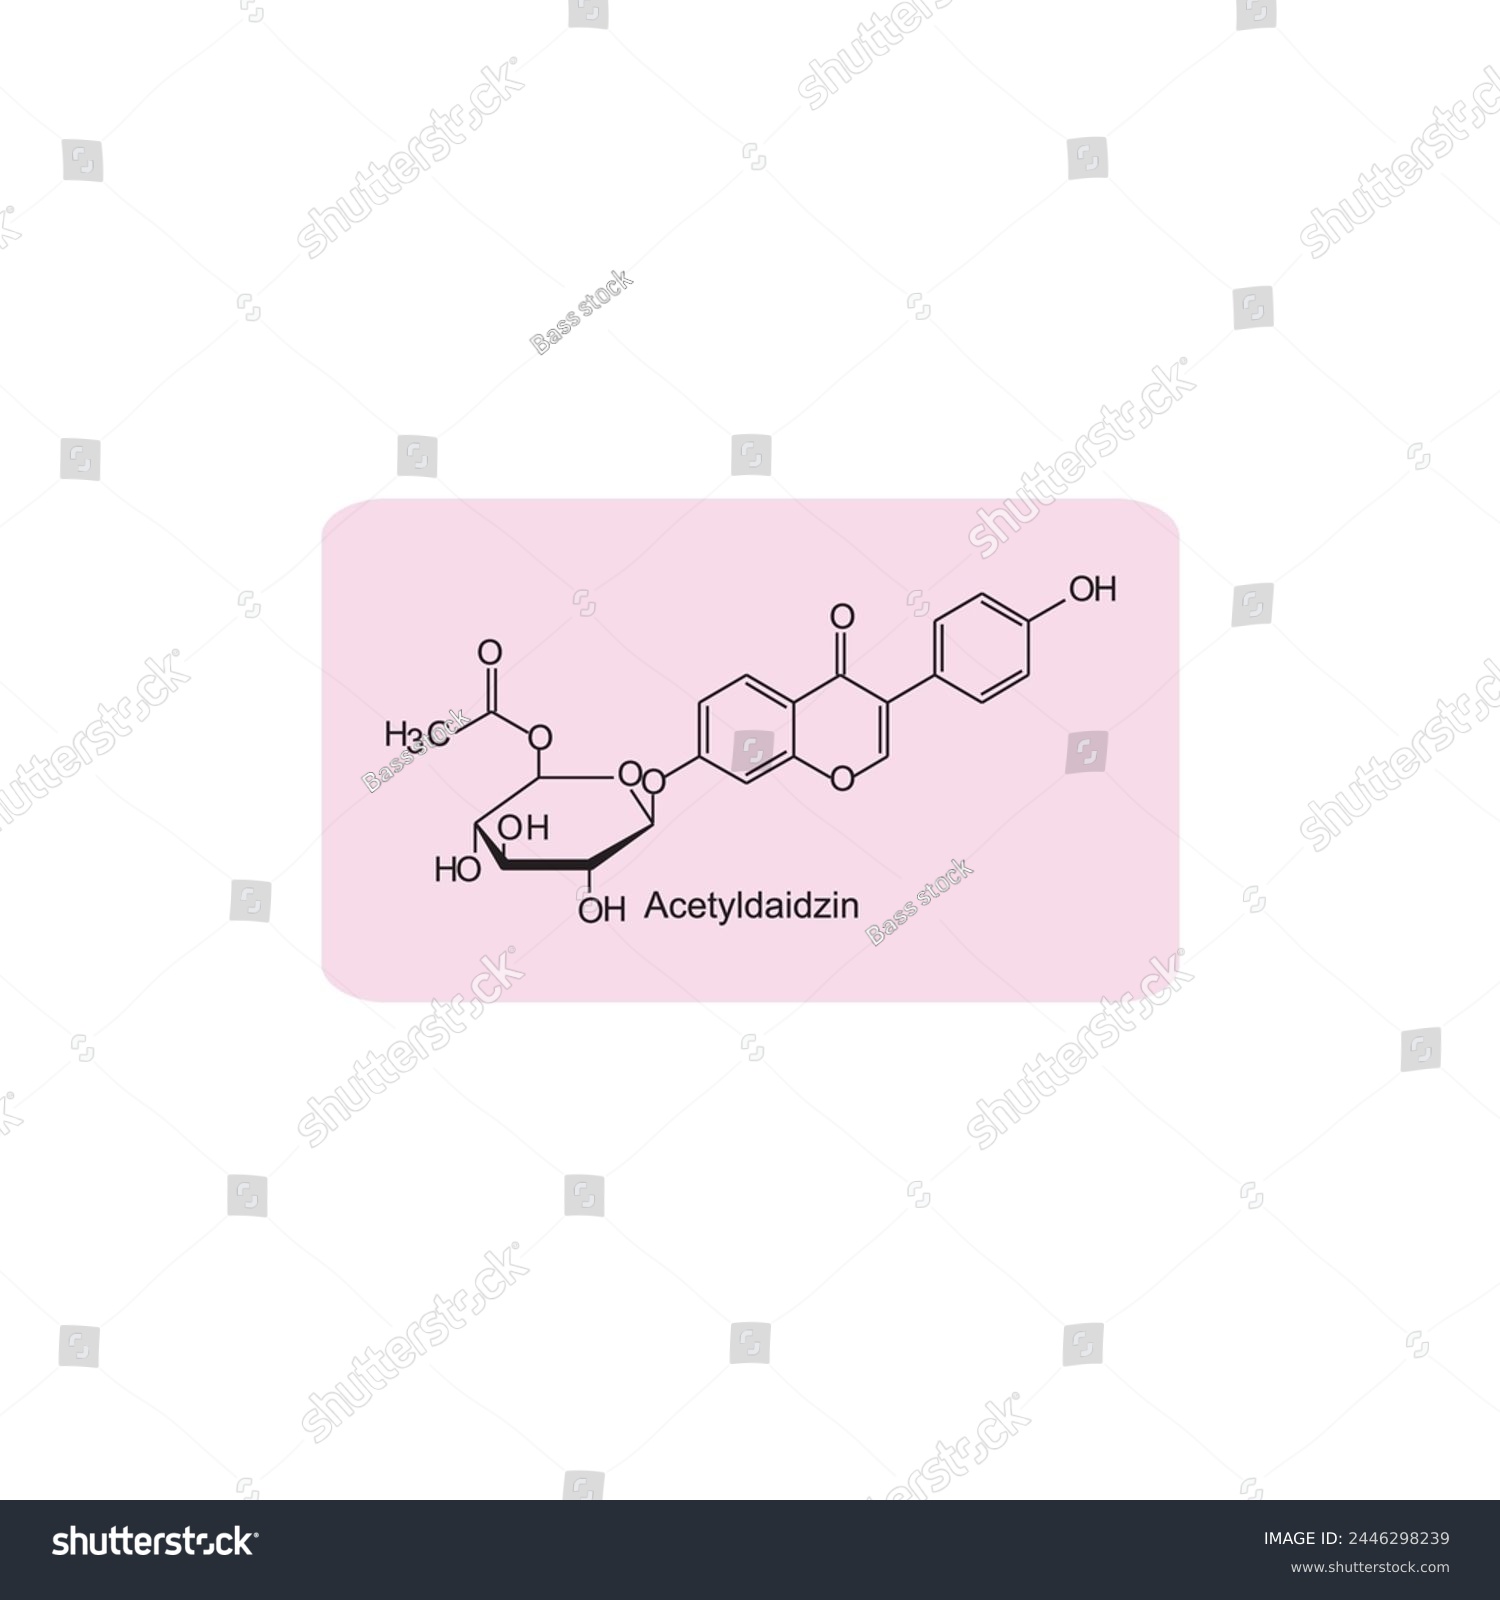 SVG of Acetyldaidzin skeletal structure diagram.Isoflavanone compound molecule scientific illustration on pink background. svg